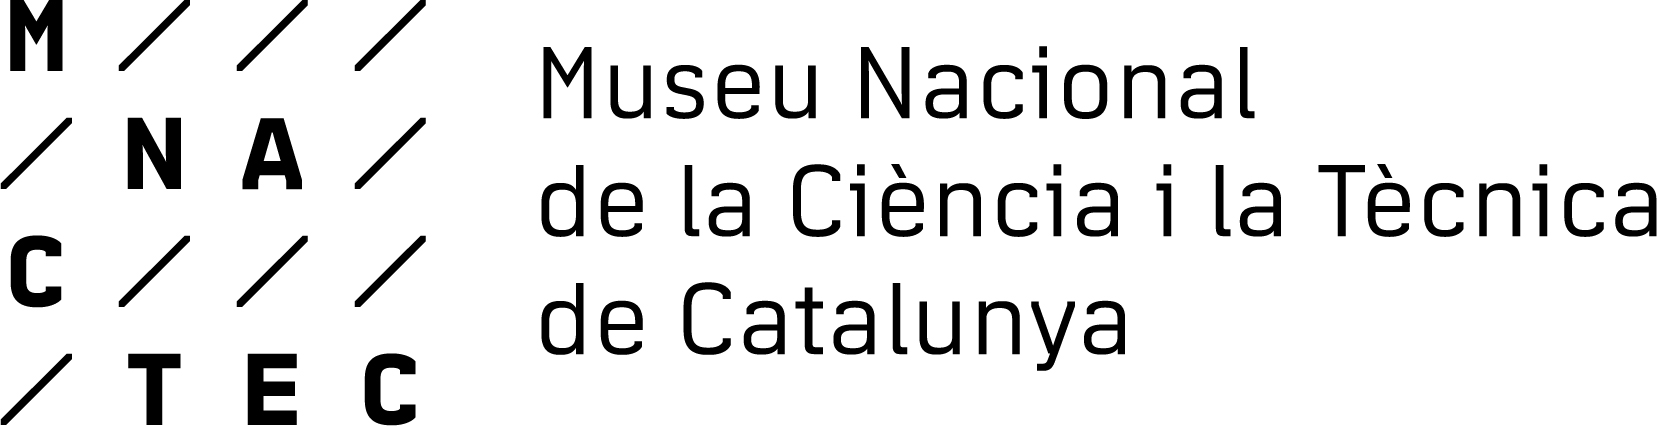 Museu Nacional de la Ciència i la Tècnica de Catalunya (MNACTEC) - Magnet | Magnet